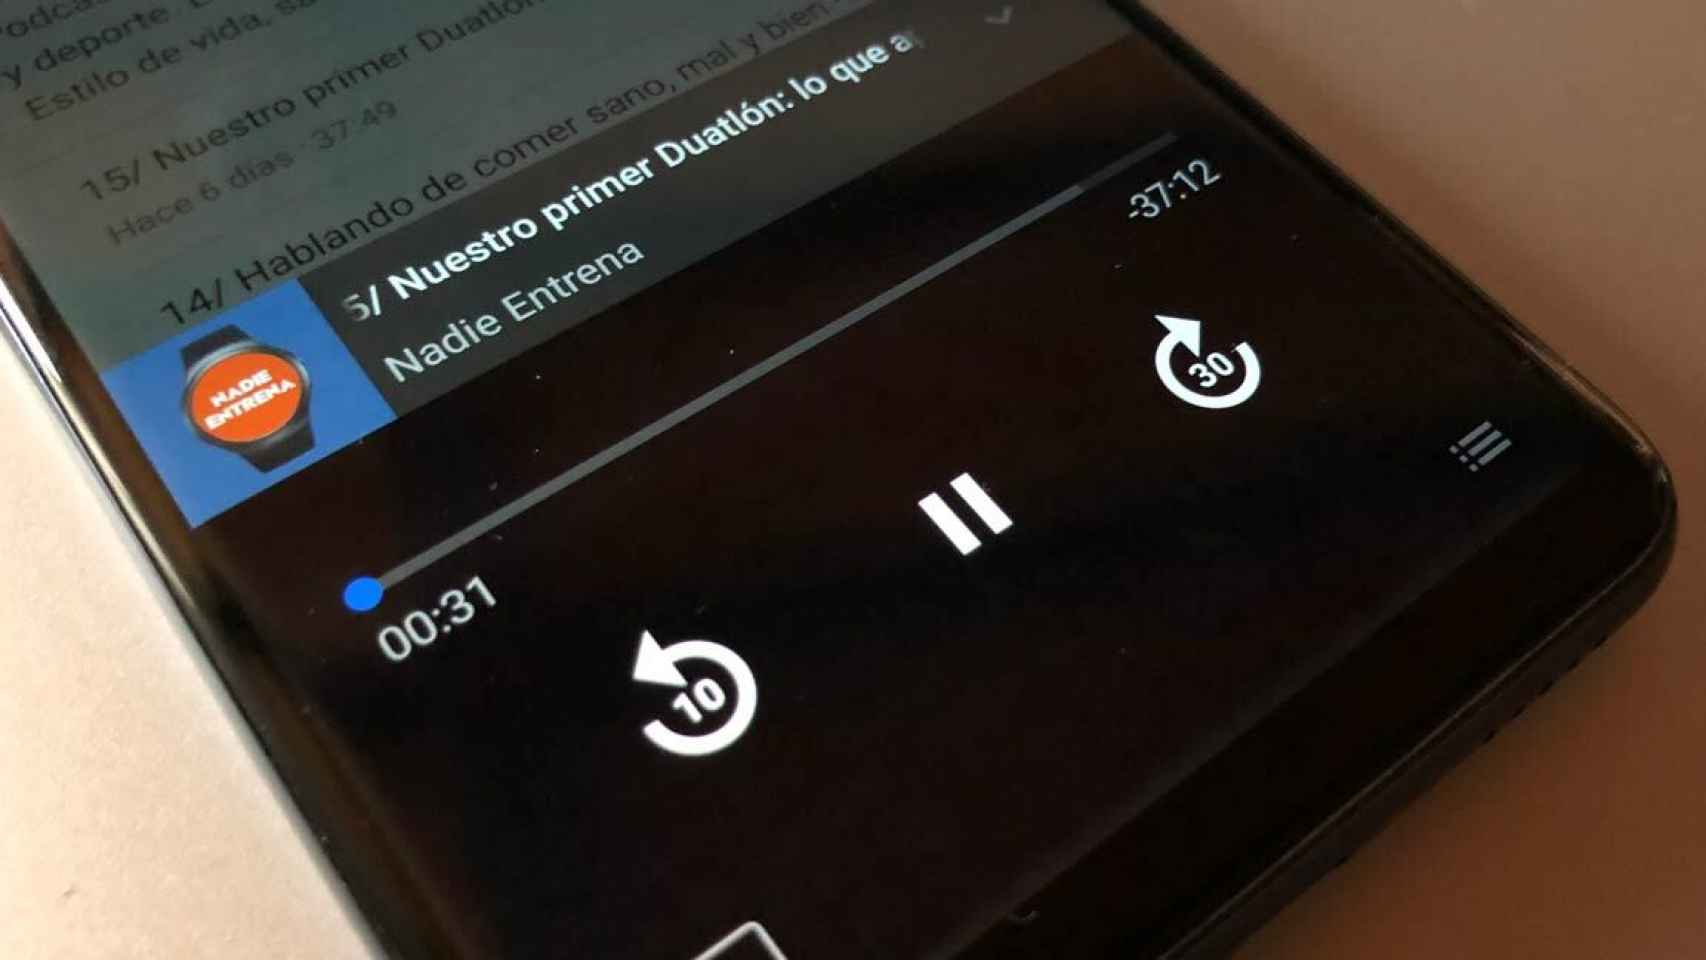 Las mejores aplicaciones Android para escuchar podcast